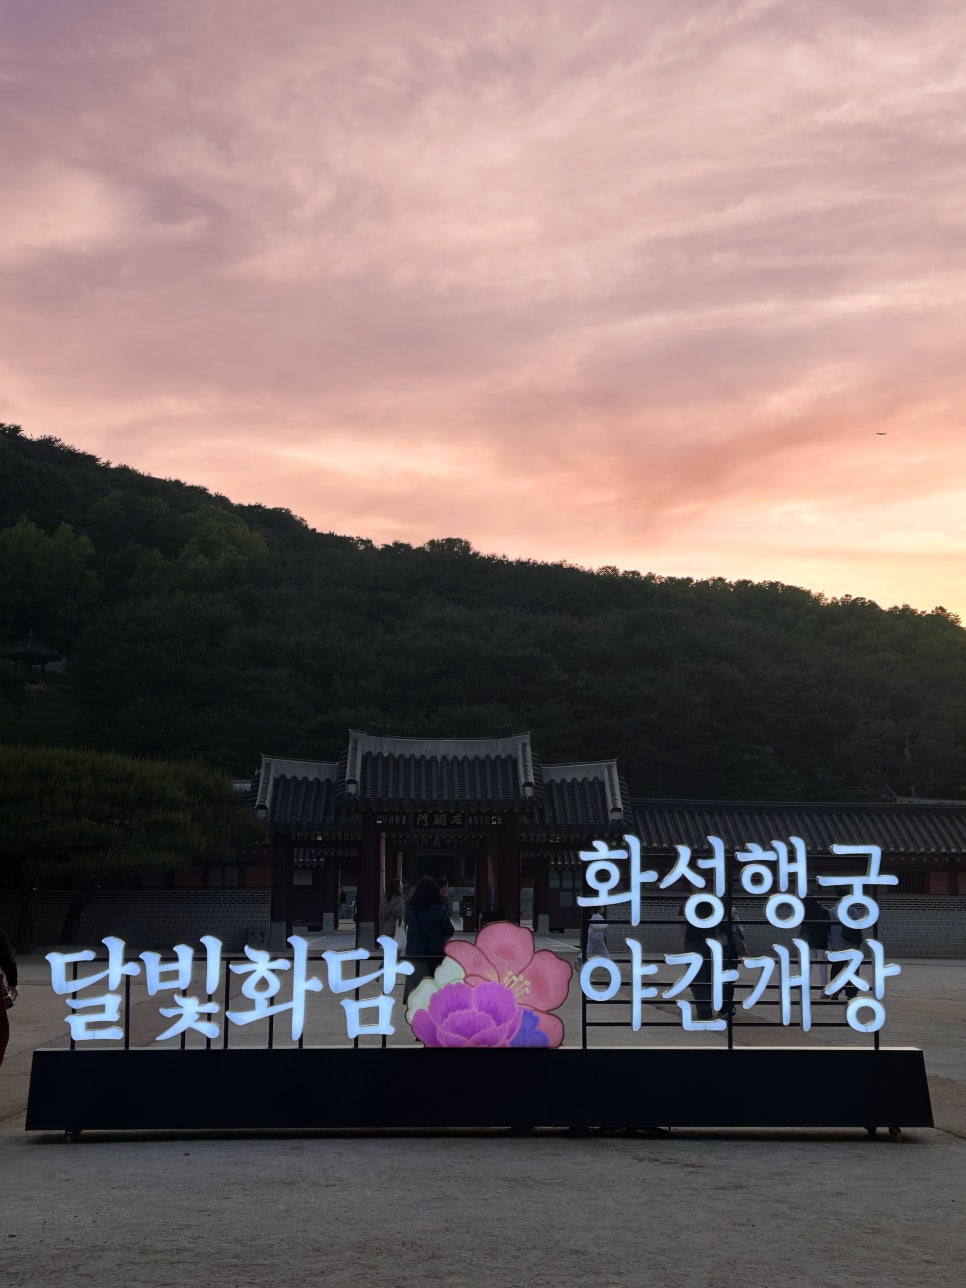 수원 화성행궁 야간개장, 서울 근교 주말 데이트 코스로 가기 좋은 달빛화담 (일정, 주차장)